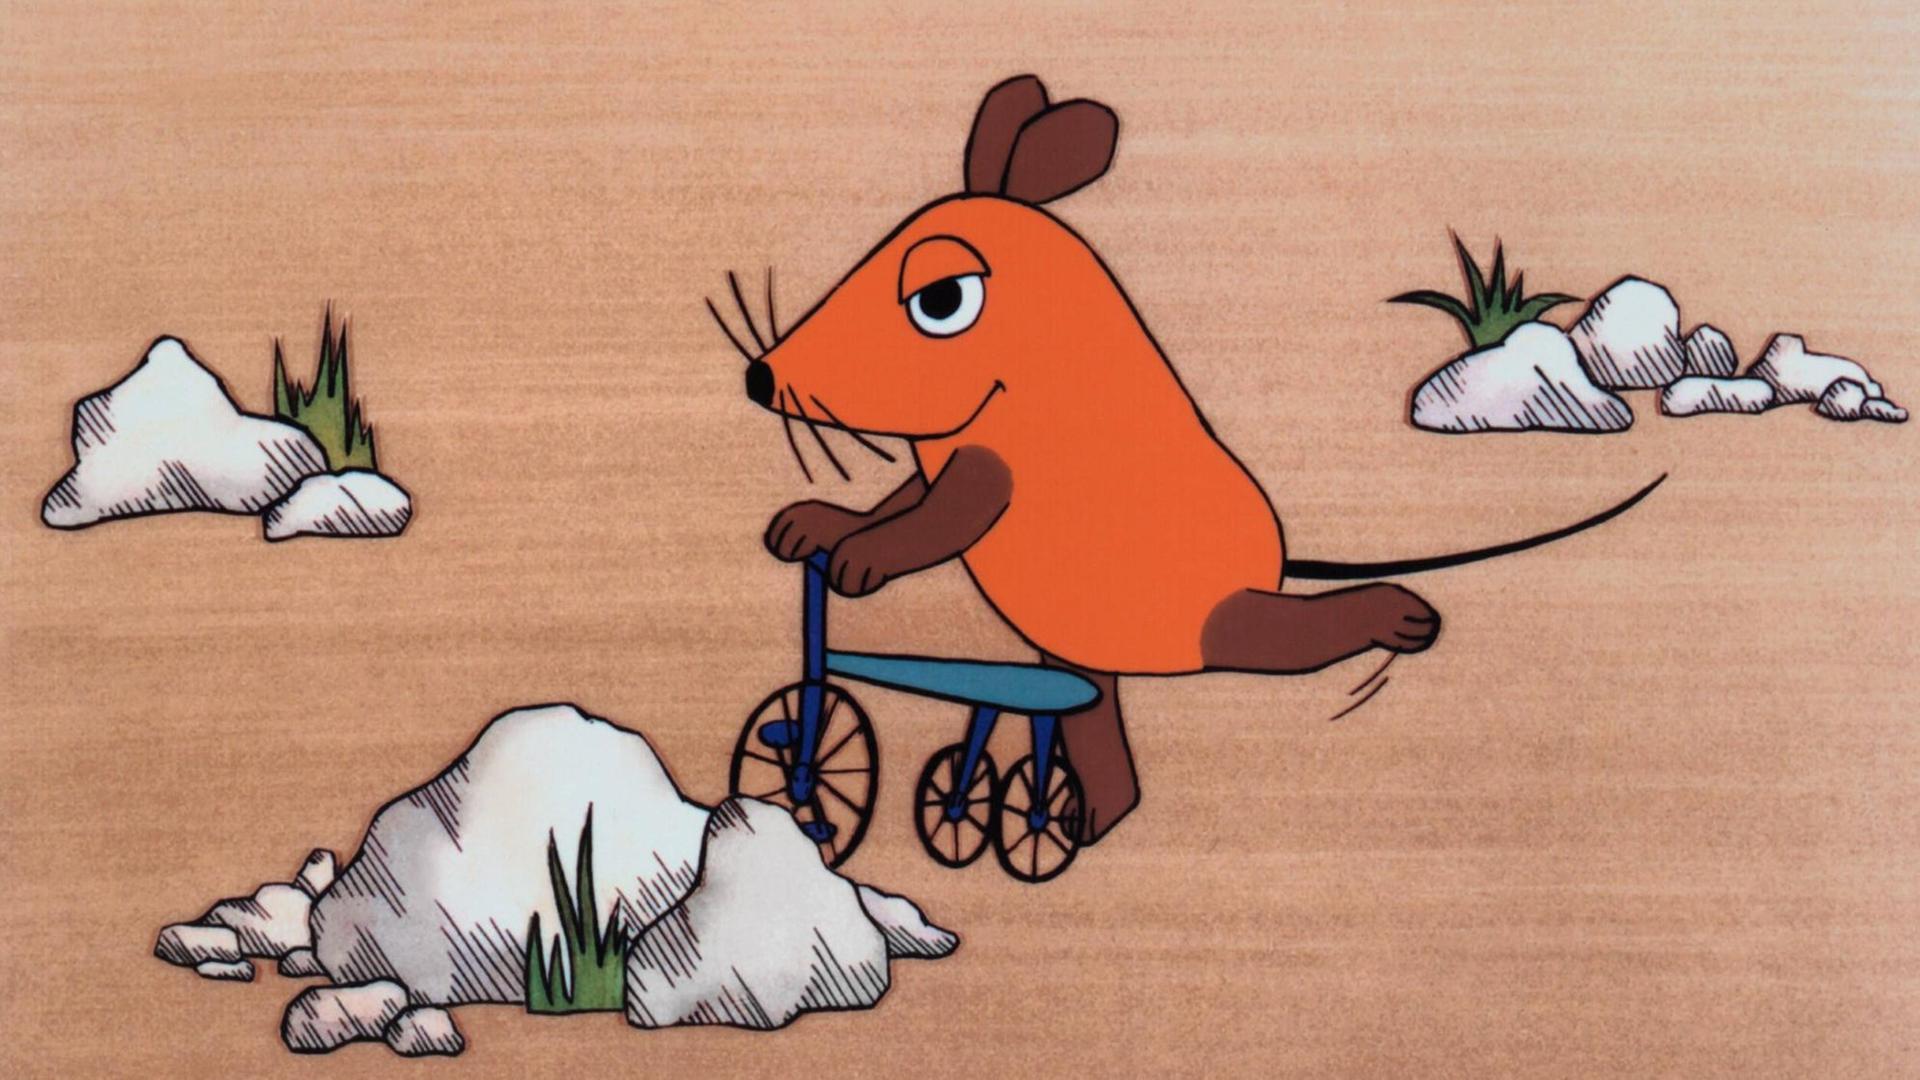 Ein Farbfoto zeigt die orangefarbene, offenbar erfreute Zeichentrick-Maus auf einem blauen Roller, umgeben von einigen weißen Felsen und kargen Grasbüscheln. Die erste Folge der "Sendung mit der Maus", ausgestrahlt am 7. März 1971 The Mouse Television: Die Sendung Mit Der Maus The Broadcast With The Mouse TV-Serie De 1971-, 07 March 1971 PUBLICATIONxINxGERxSUIxAUTxONLY Copyright: WdrxAFxArchivexMaryxEvans 12452915 editorial use only